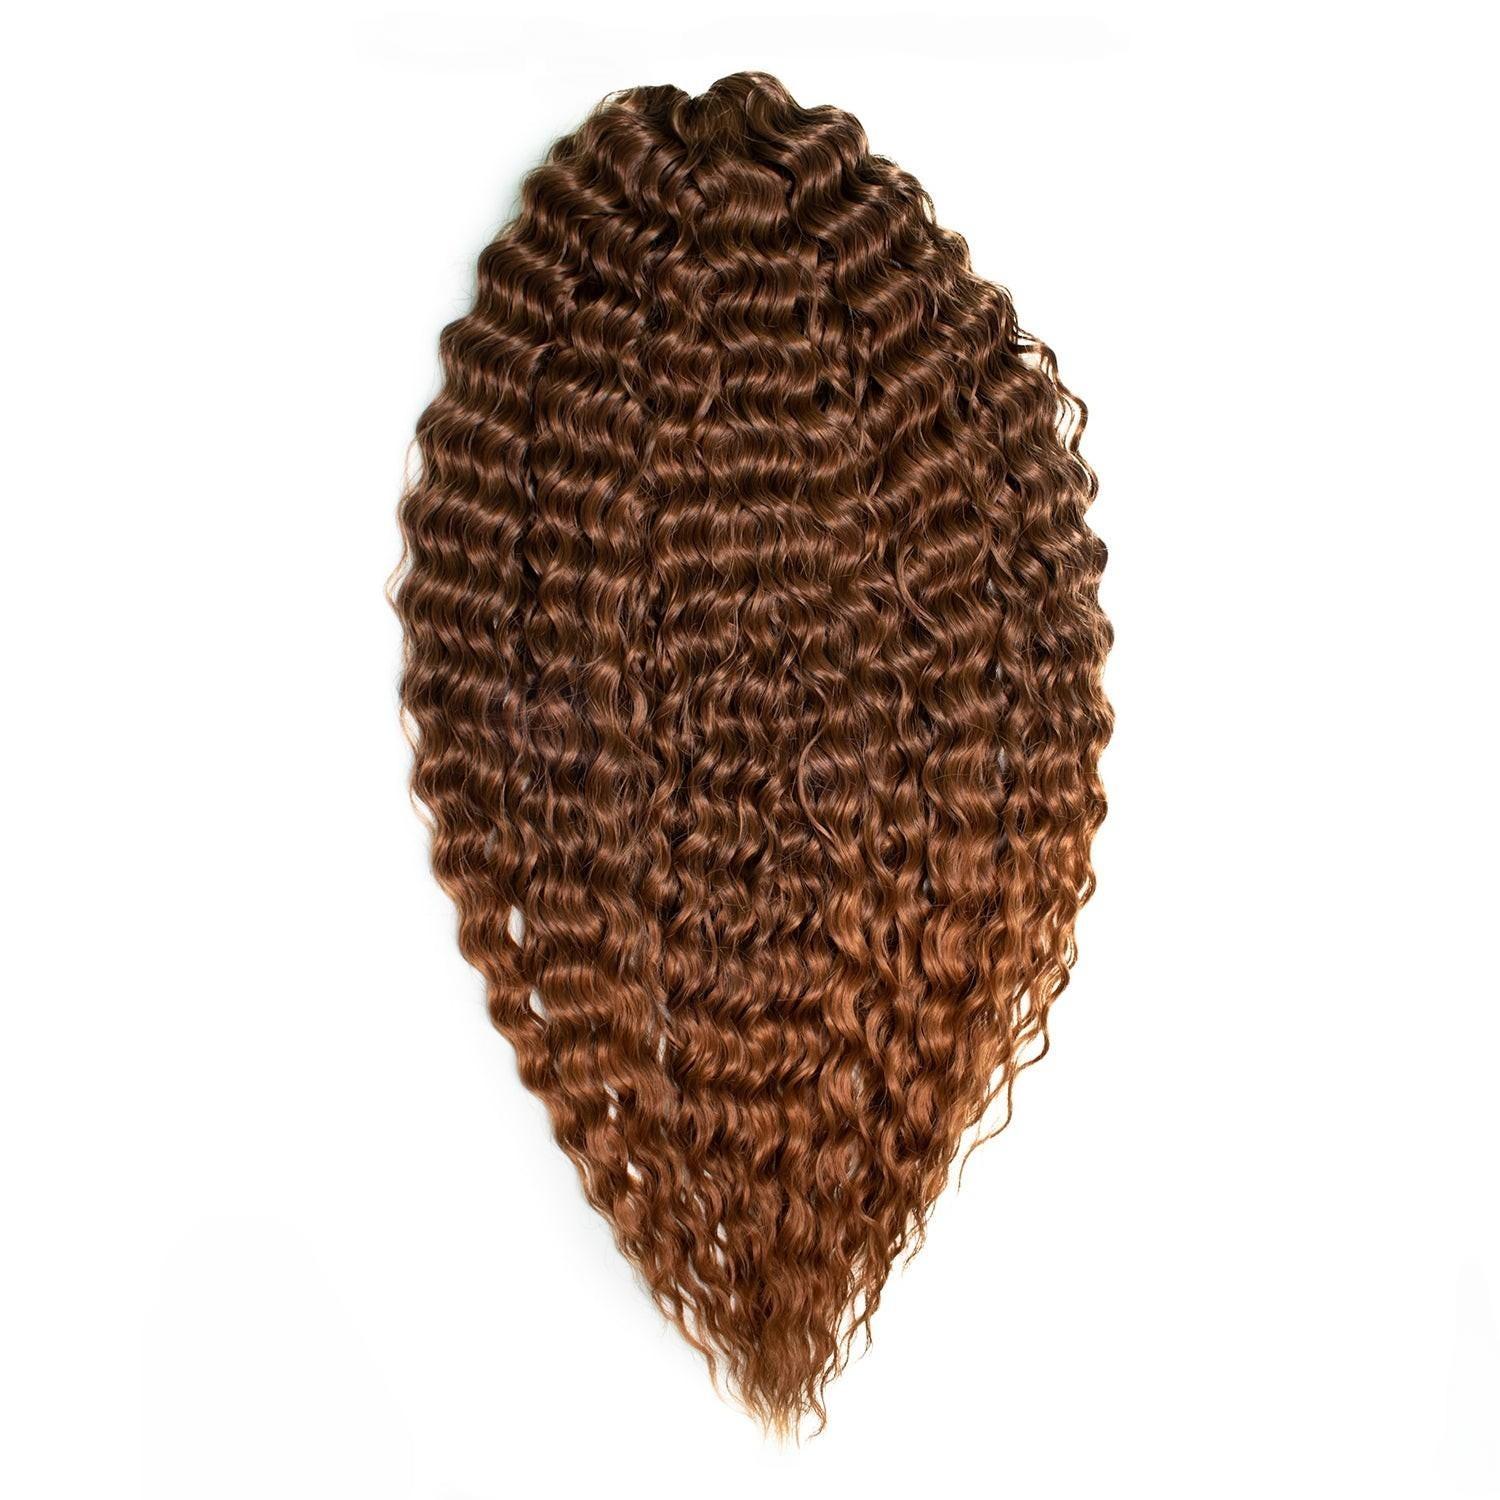 Афрокудри для плетения волос Ariel цвет T4 30 каштановый длина 60см вес 300г beam робототехника от азов до создания практических устройств